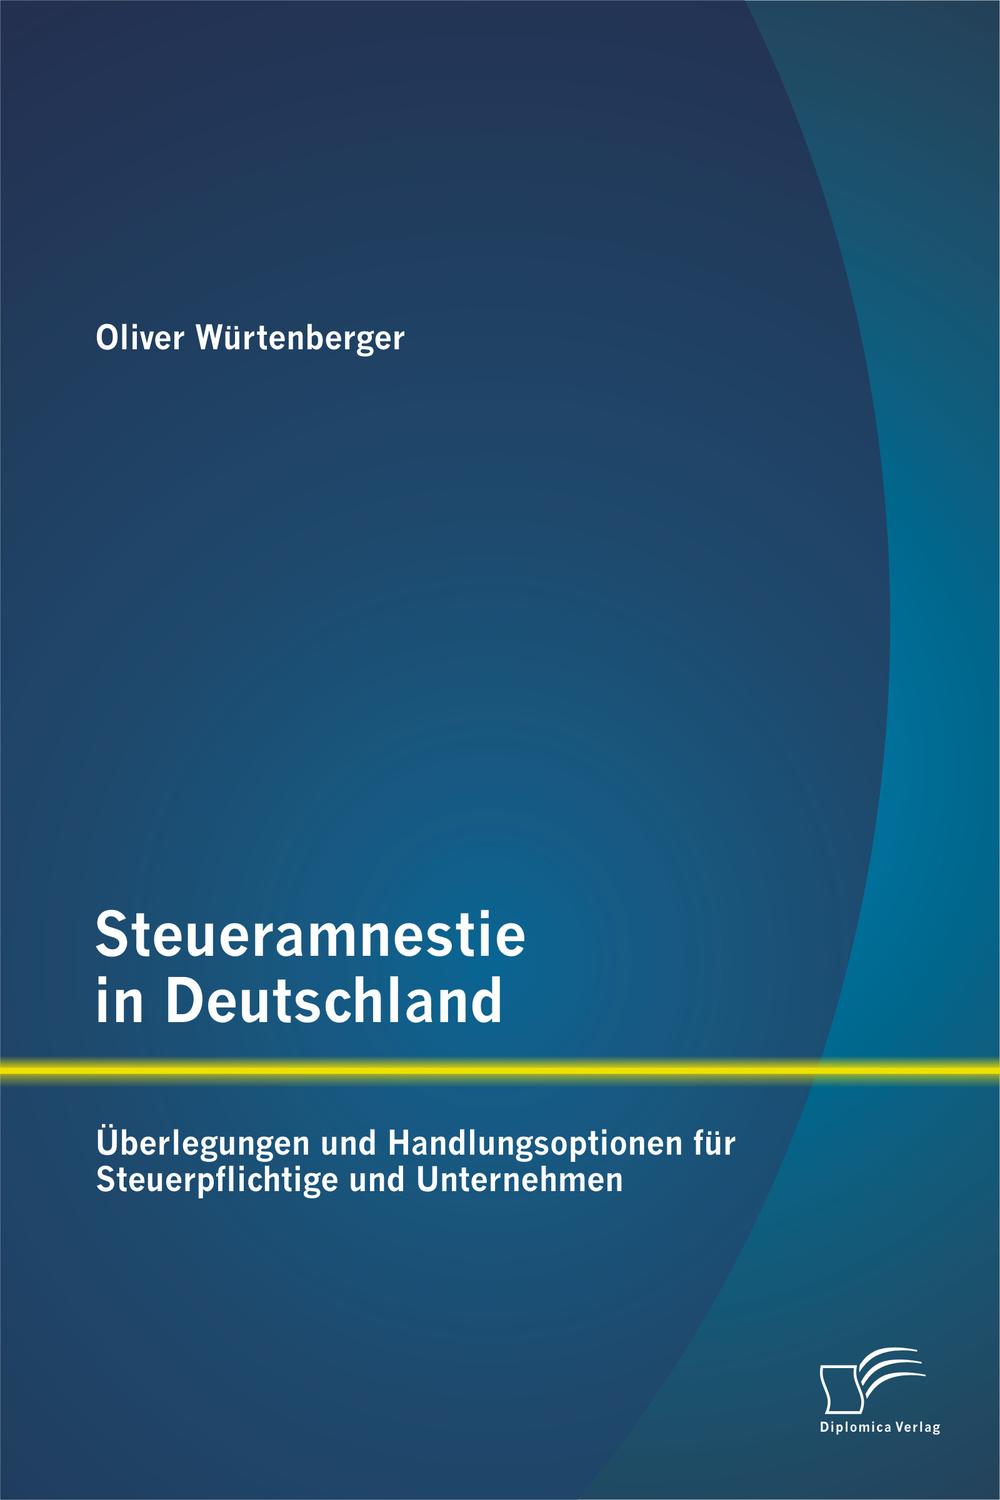 Steueramnestie in Deutschland: Überlegungen und Handlungsoptionen für Steuerpflichtige und Unternehmen - Oliver Würtenberger